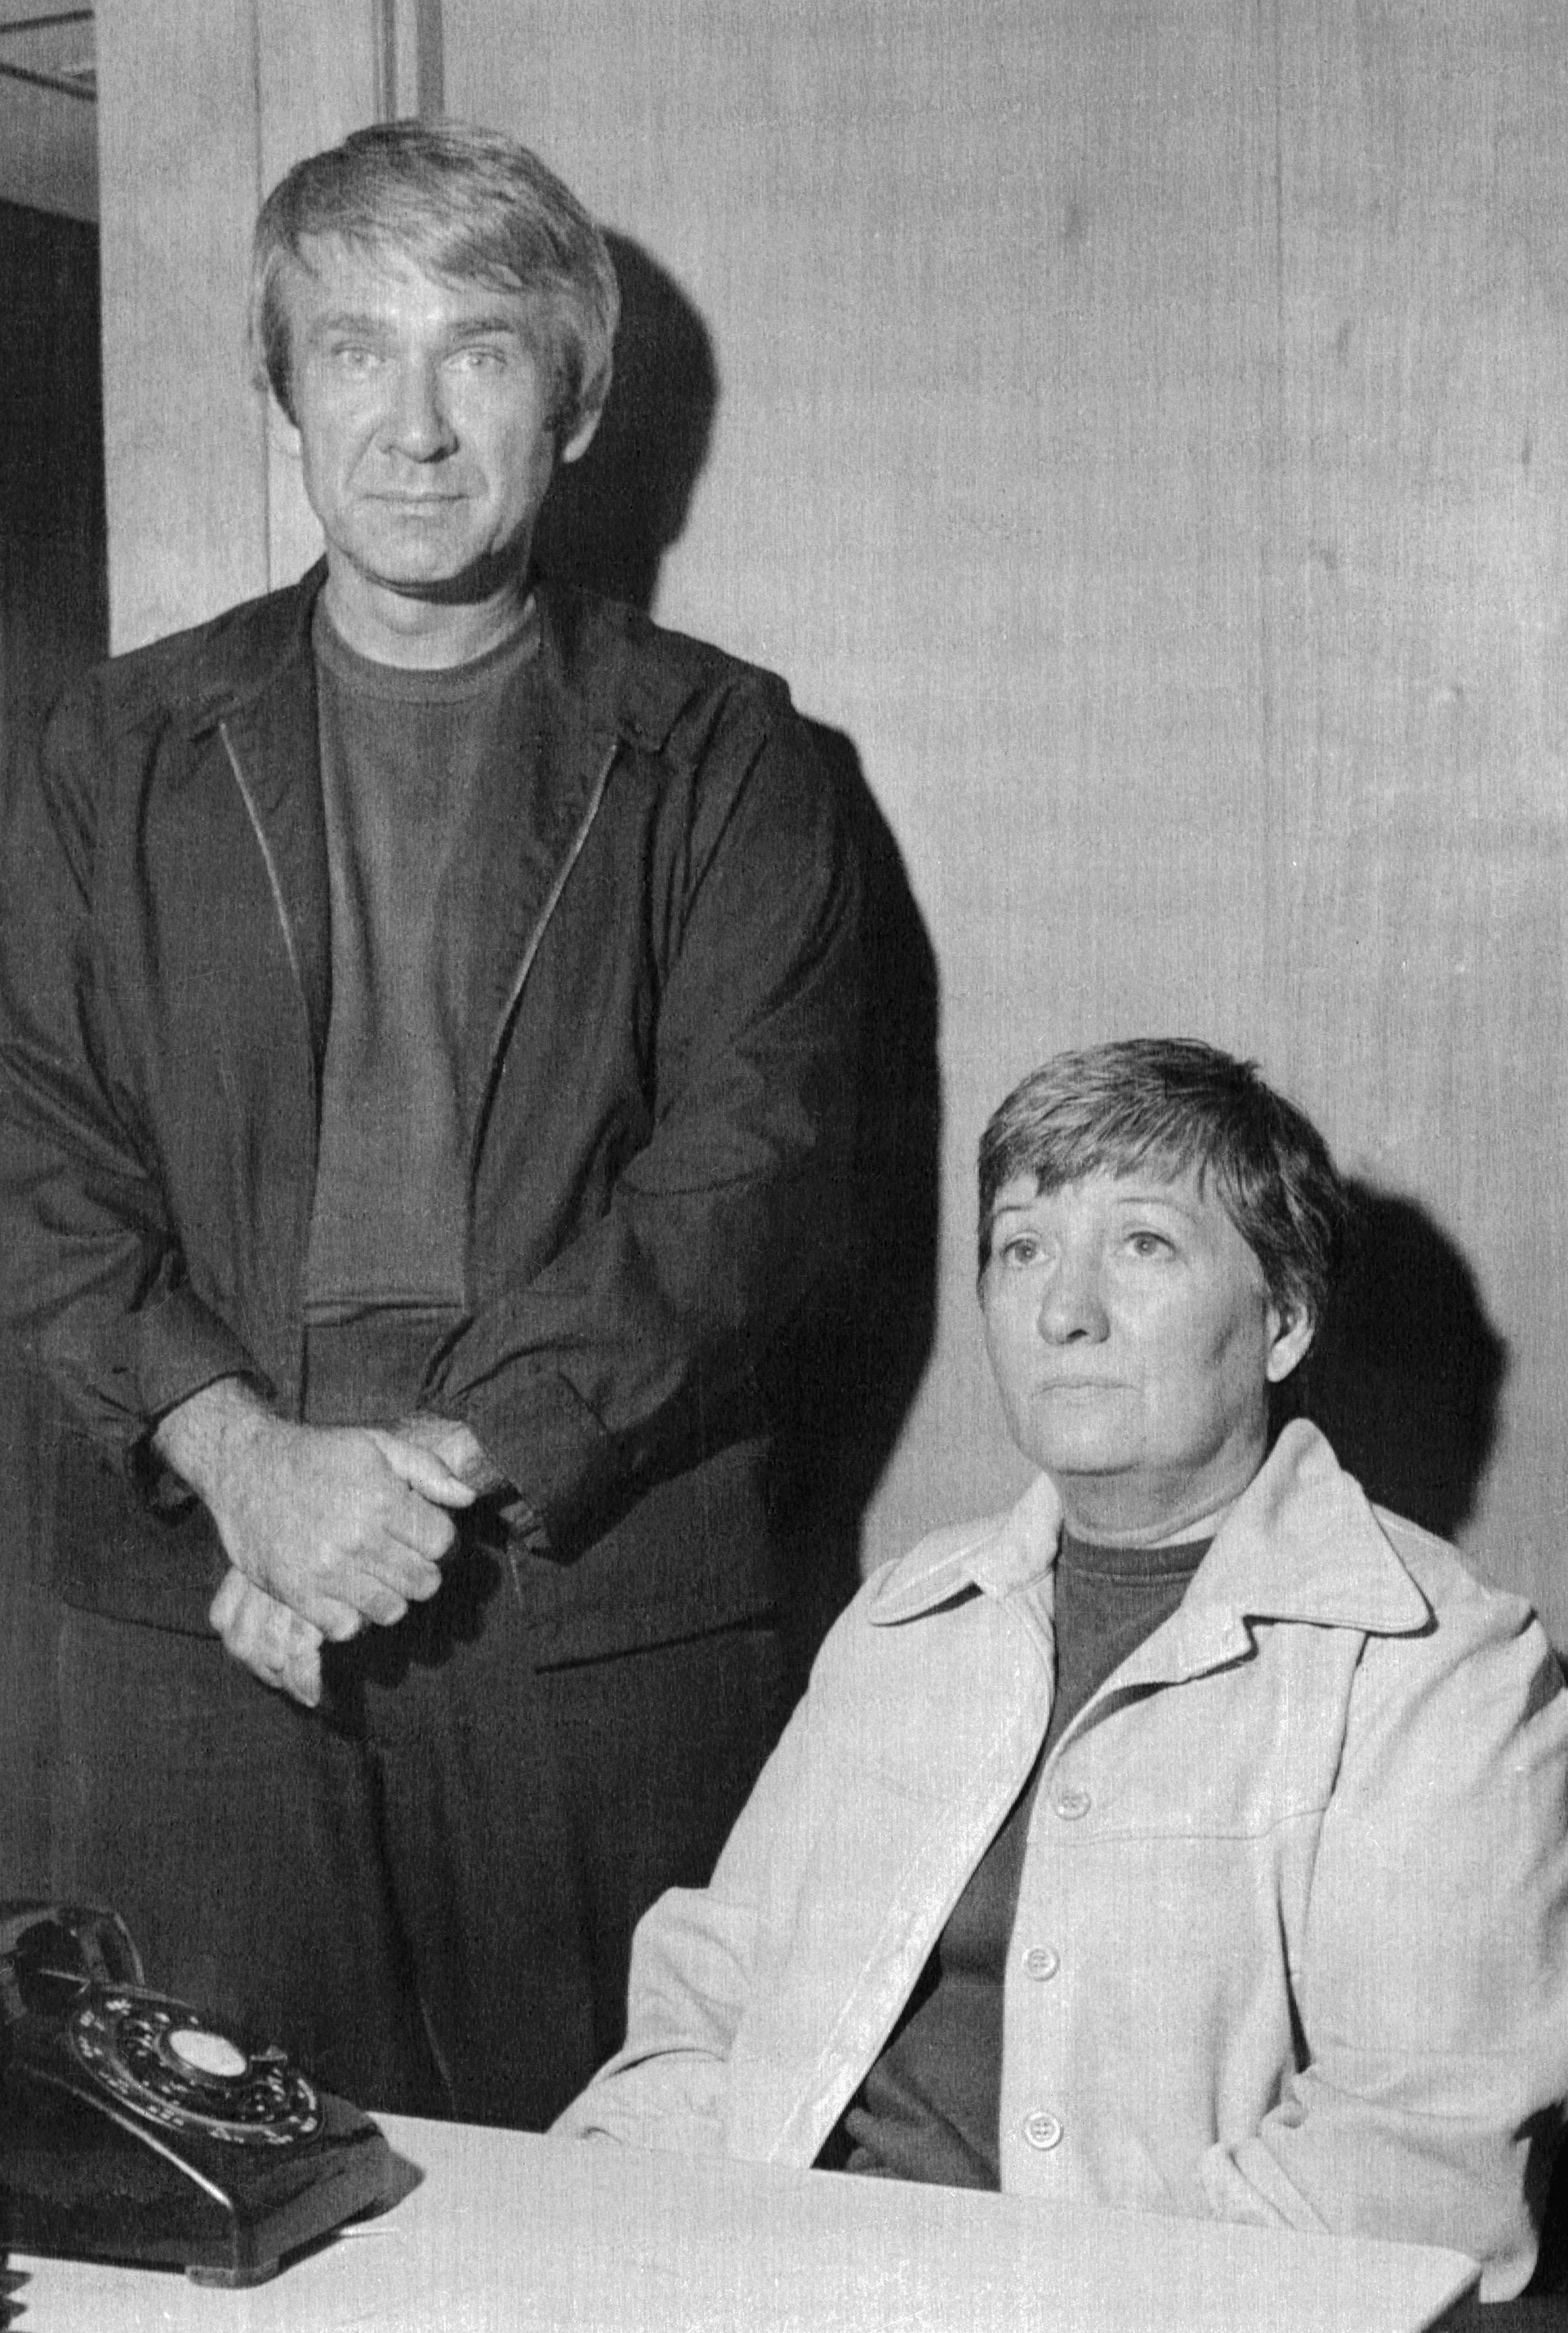 Marshall Applewhite y Bonnie Lu Trusdale Nettles habían sido arrestados en 1974, él por el robo de un auto y ella por el uso fraudulento de tarjetas de crédito. Ambos lideraron más tarde la secta Heaven's Gate